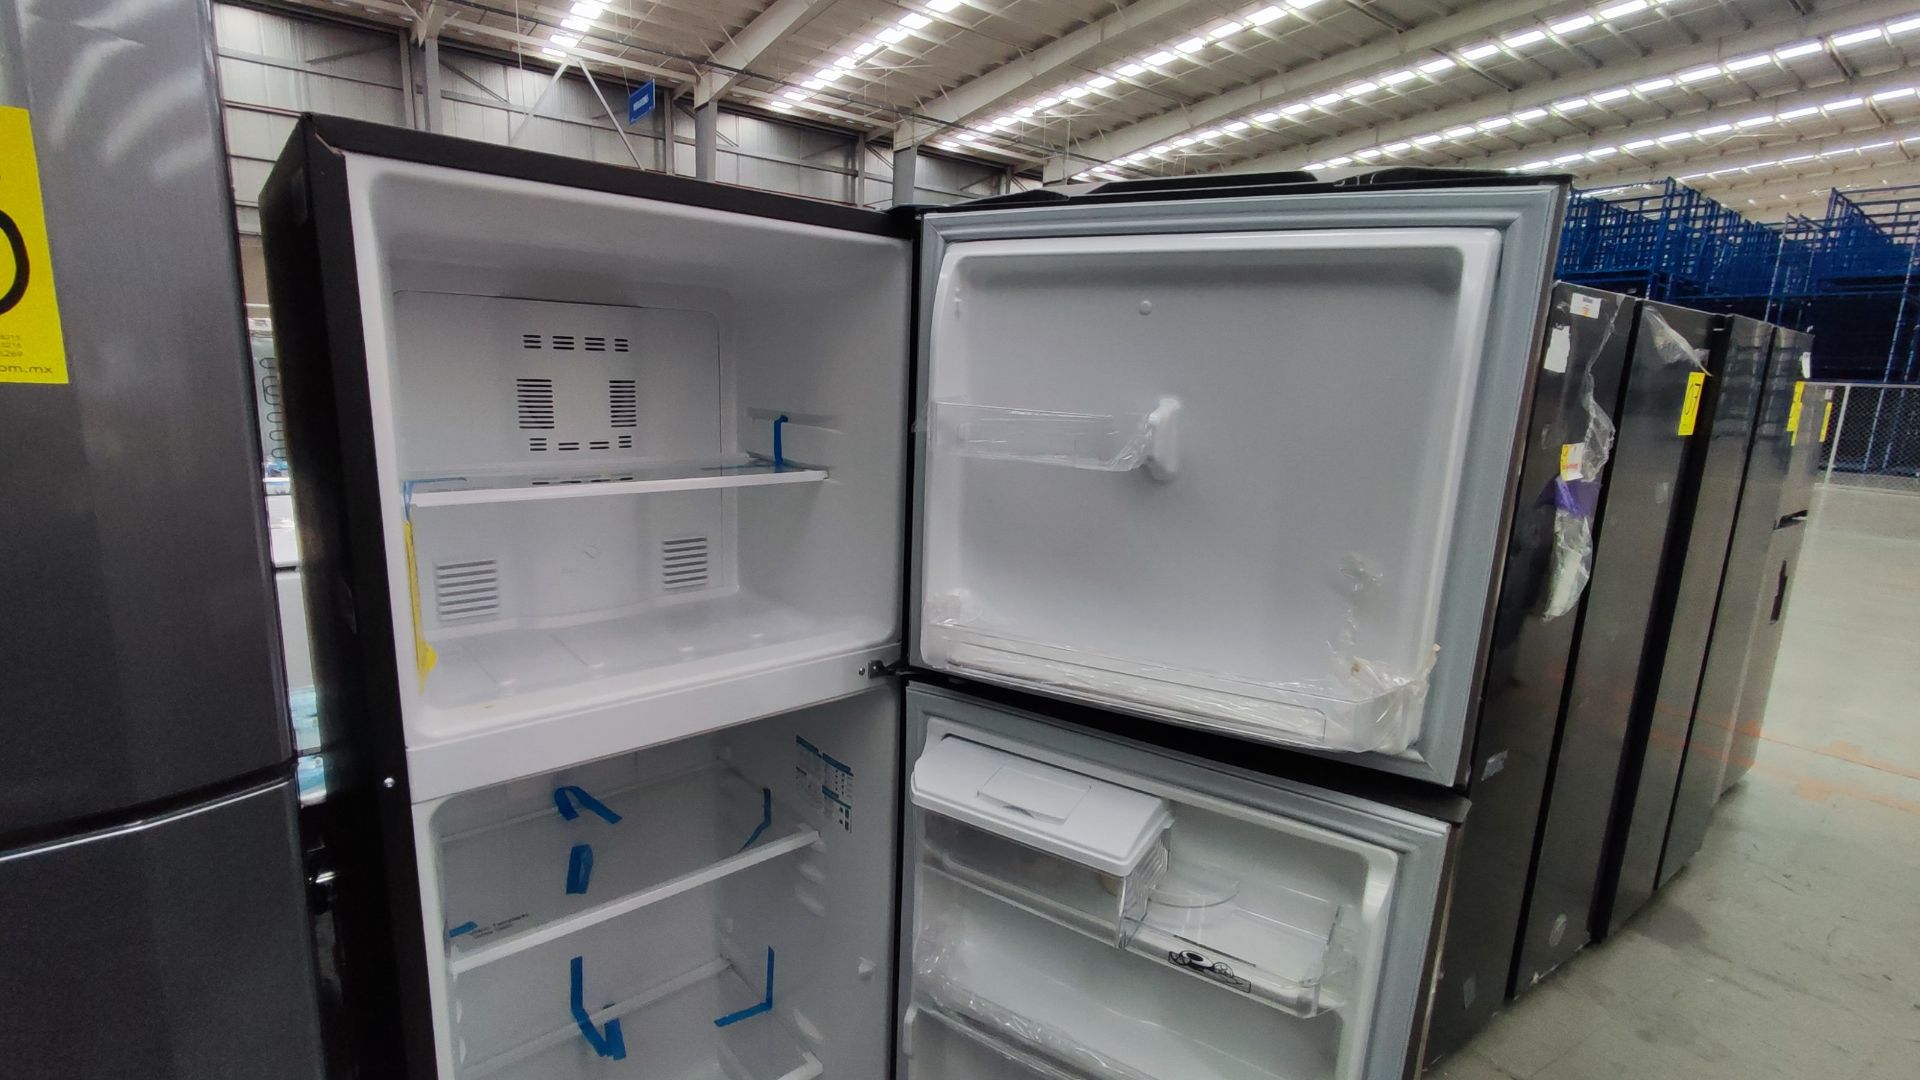 1 Refrigerador Marca Mabe, Modelo RMA300FJRM, Serie 2111B7011524, Color Gris Detalles Estéticos. Fa - Image 4 of 12